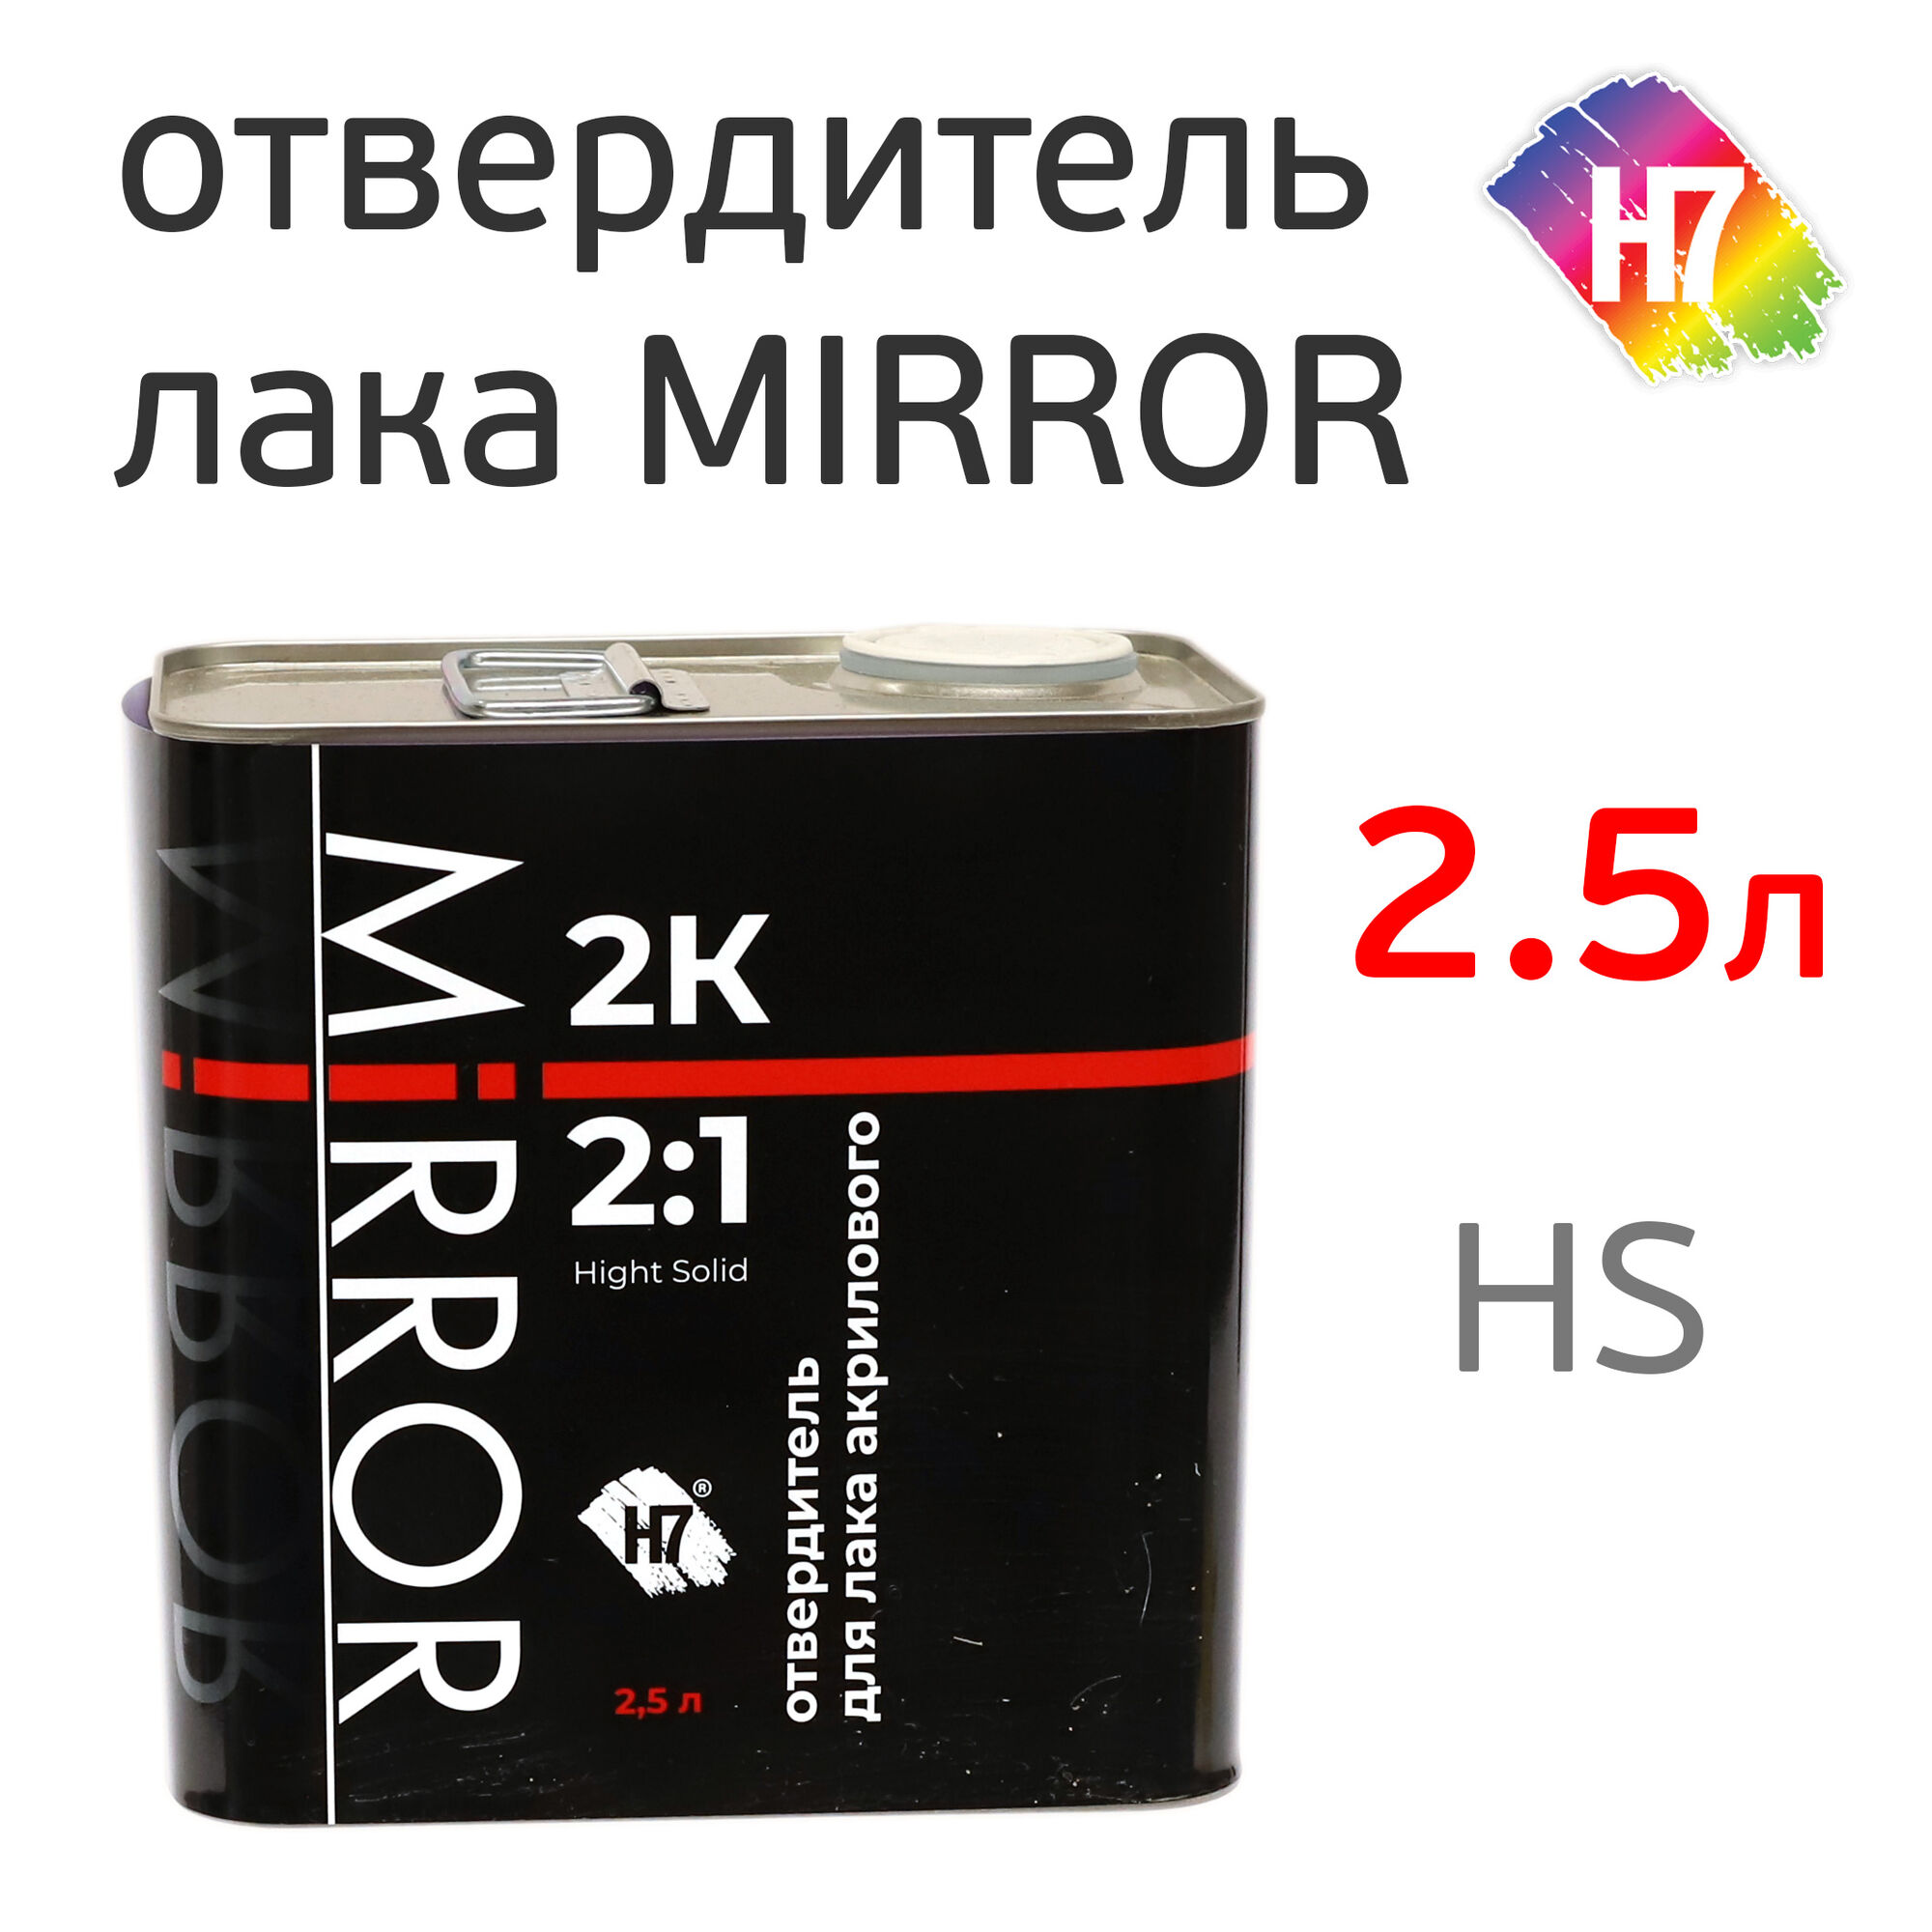 Отвердитель H7 (2.5л) для лака Mirror 2:1